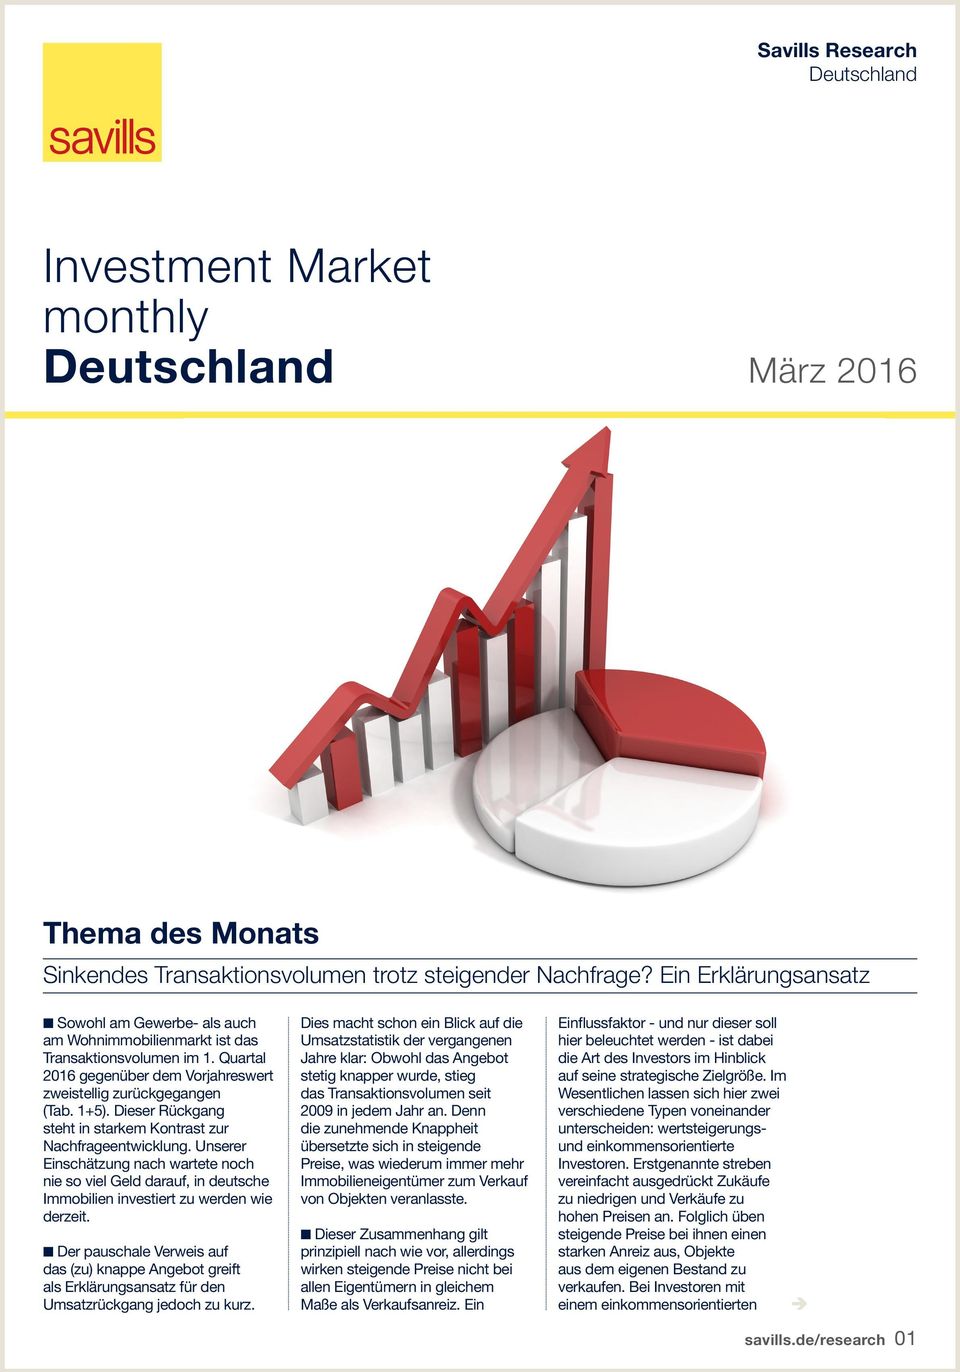 Dieser Rückgang steht in starkem Kontrast zur Nachfrageentwicklung. Unserer Einschätzung nach wartete noch nie so viel Geld darauf, in deutsche Immobilien investiert zu werden wie derzeit.